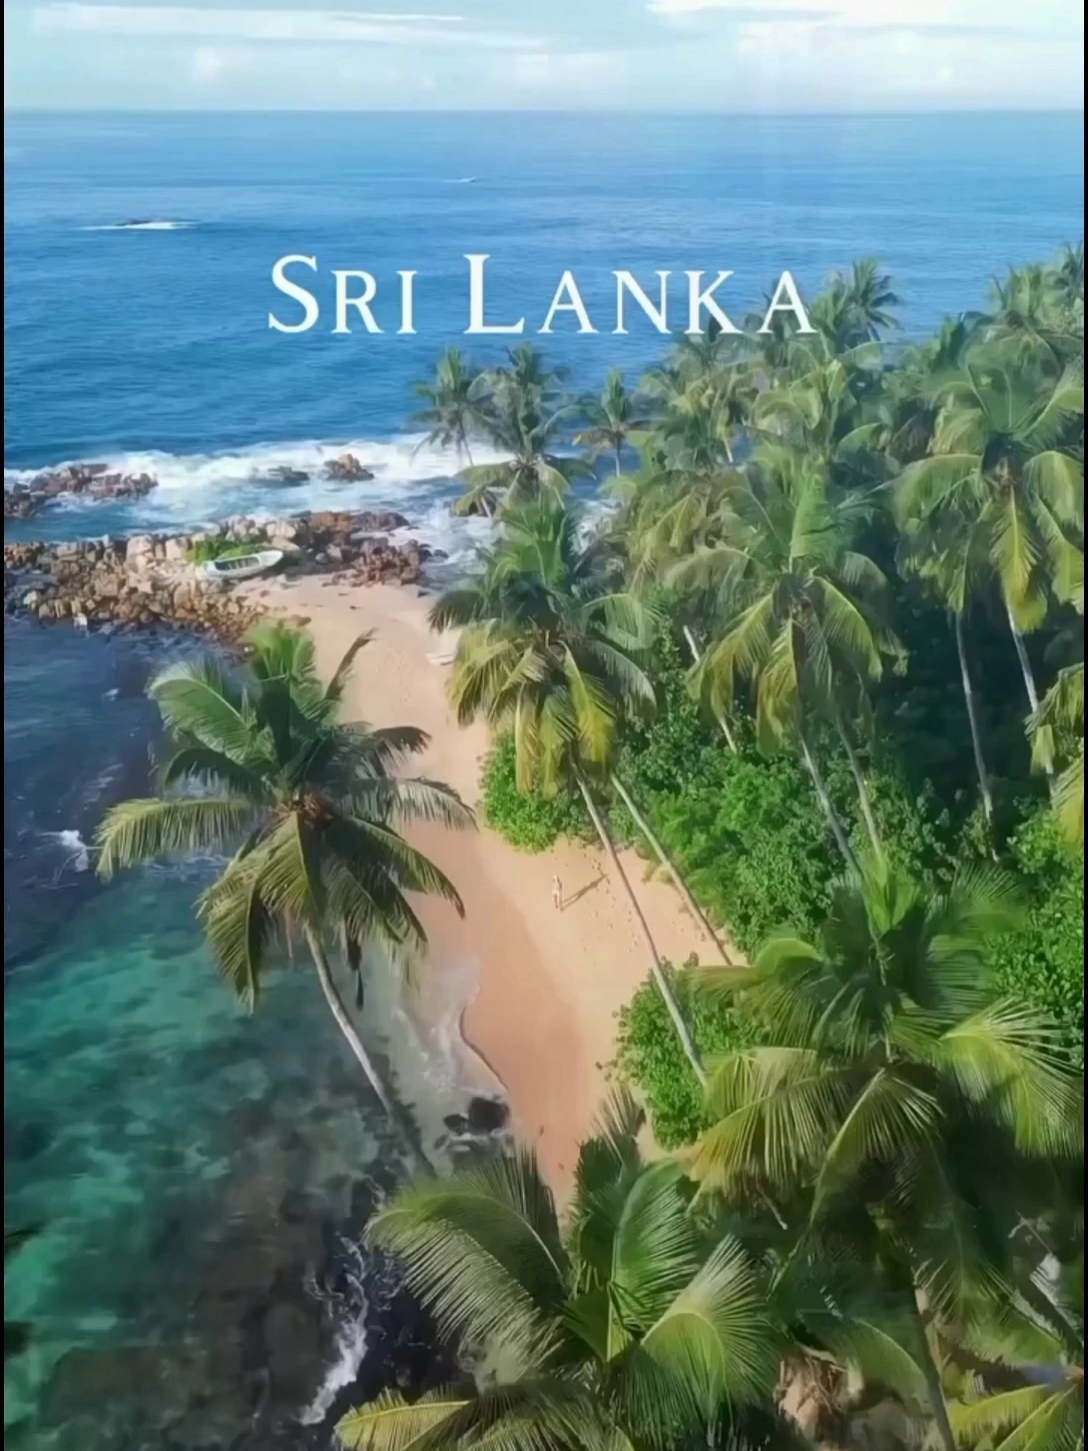 斯里兰卡旅游